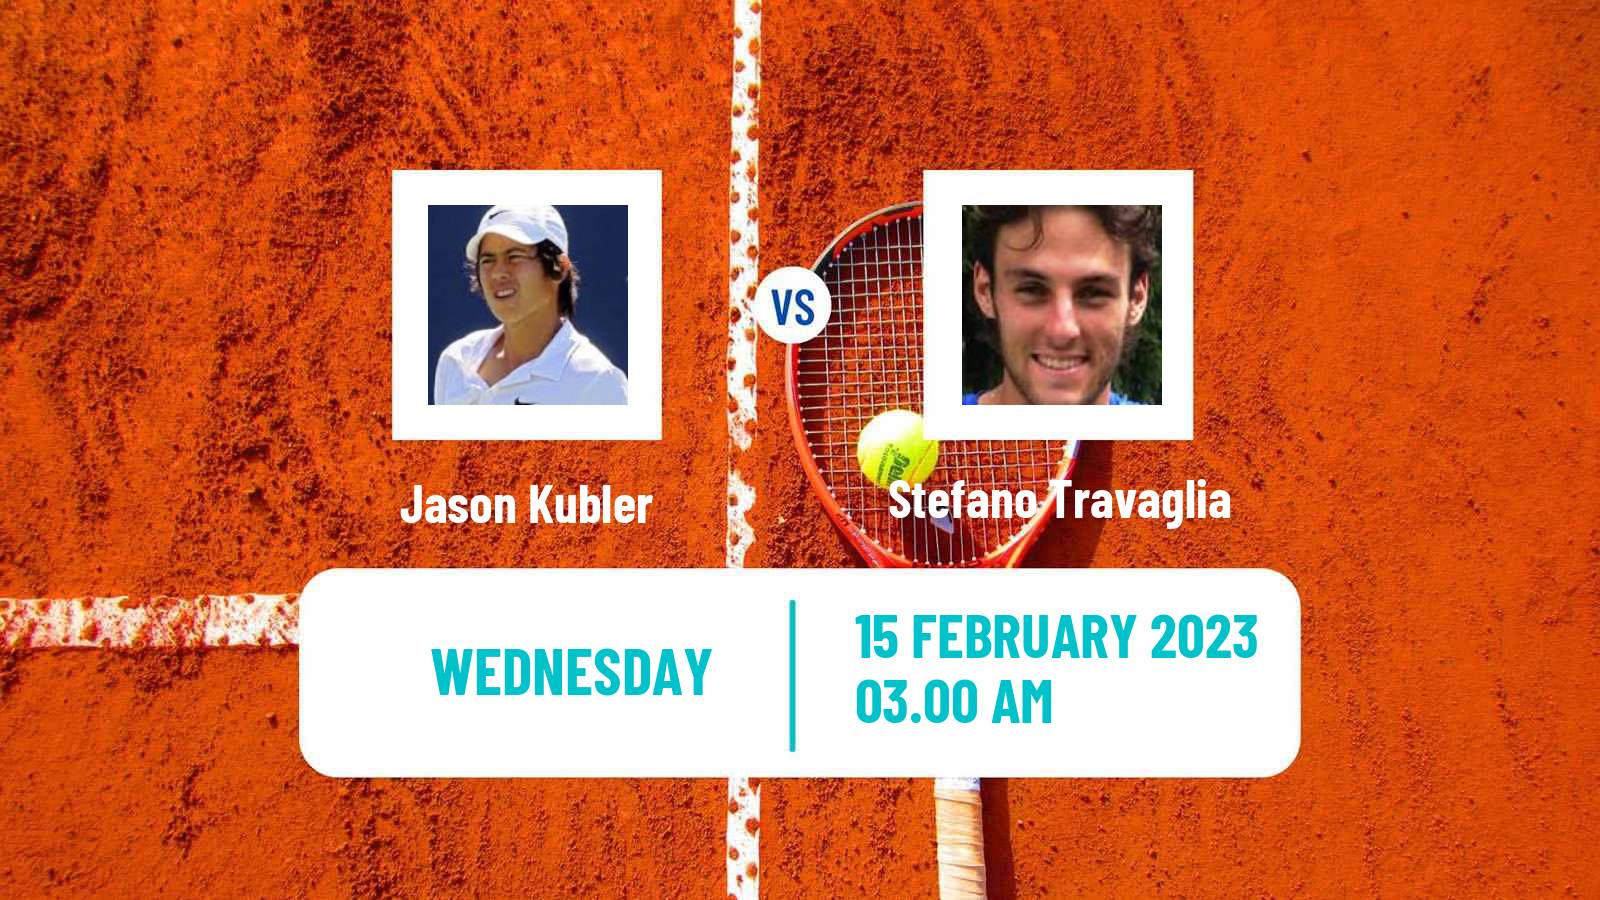 Tennis ATP Challenger Jason Kubler - Stefano Travaglia